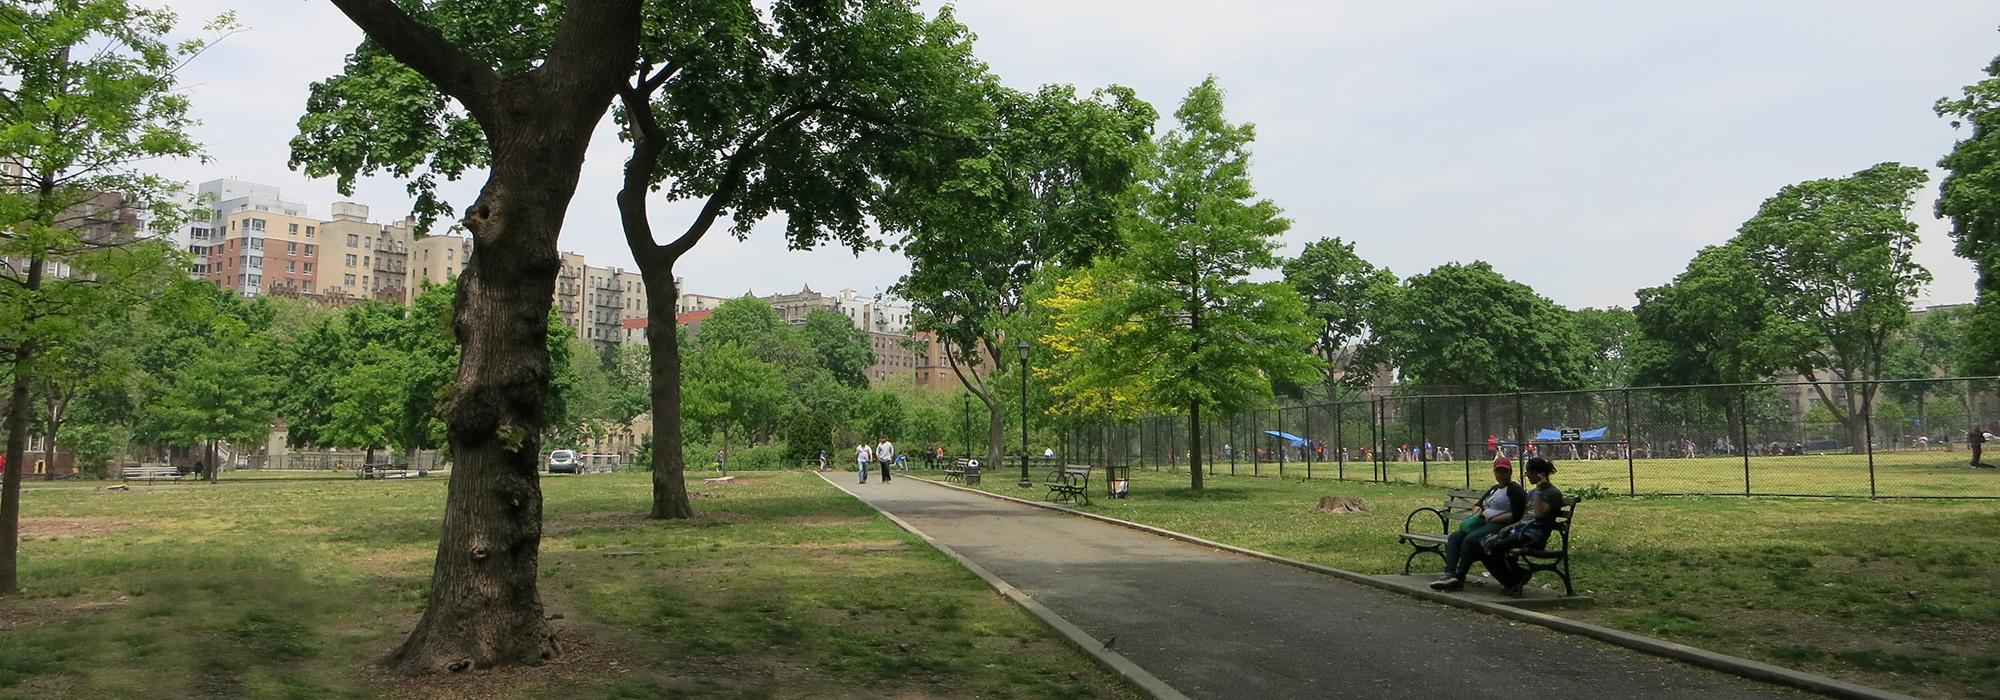 Mullaly Park, Bronx, NY